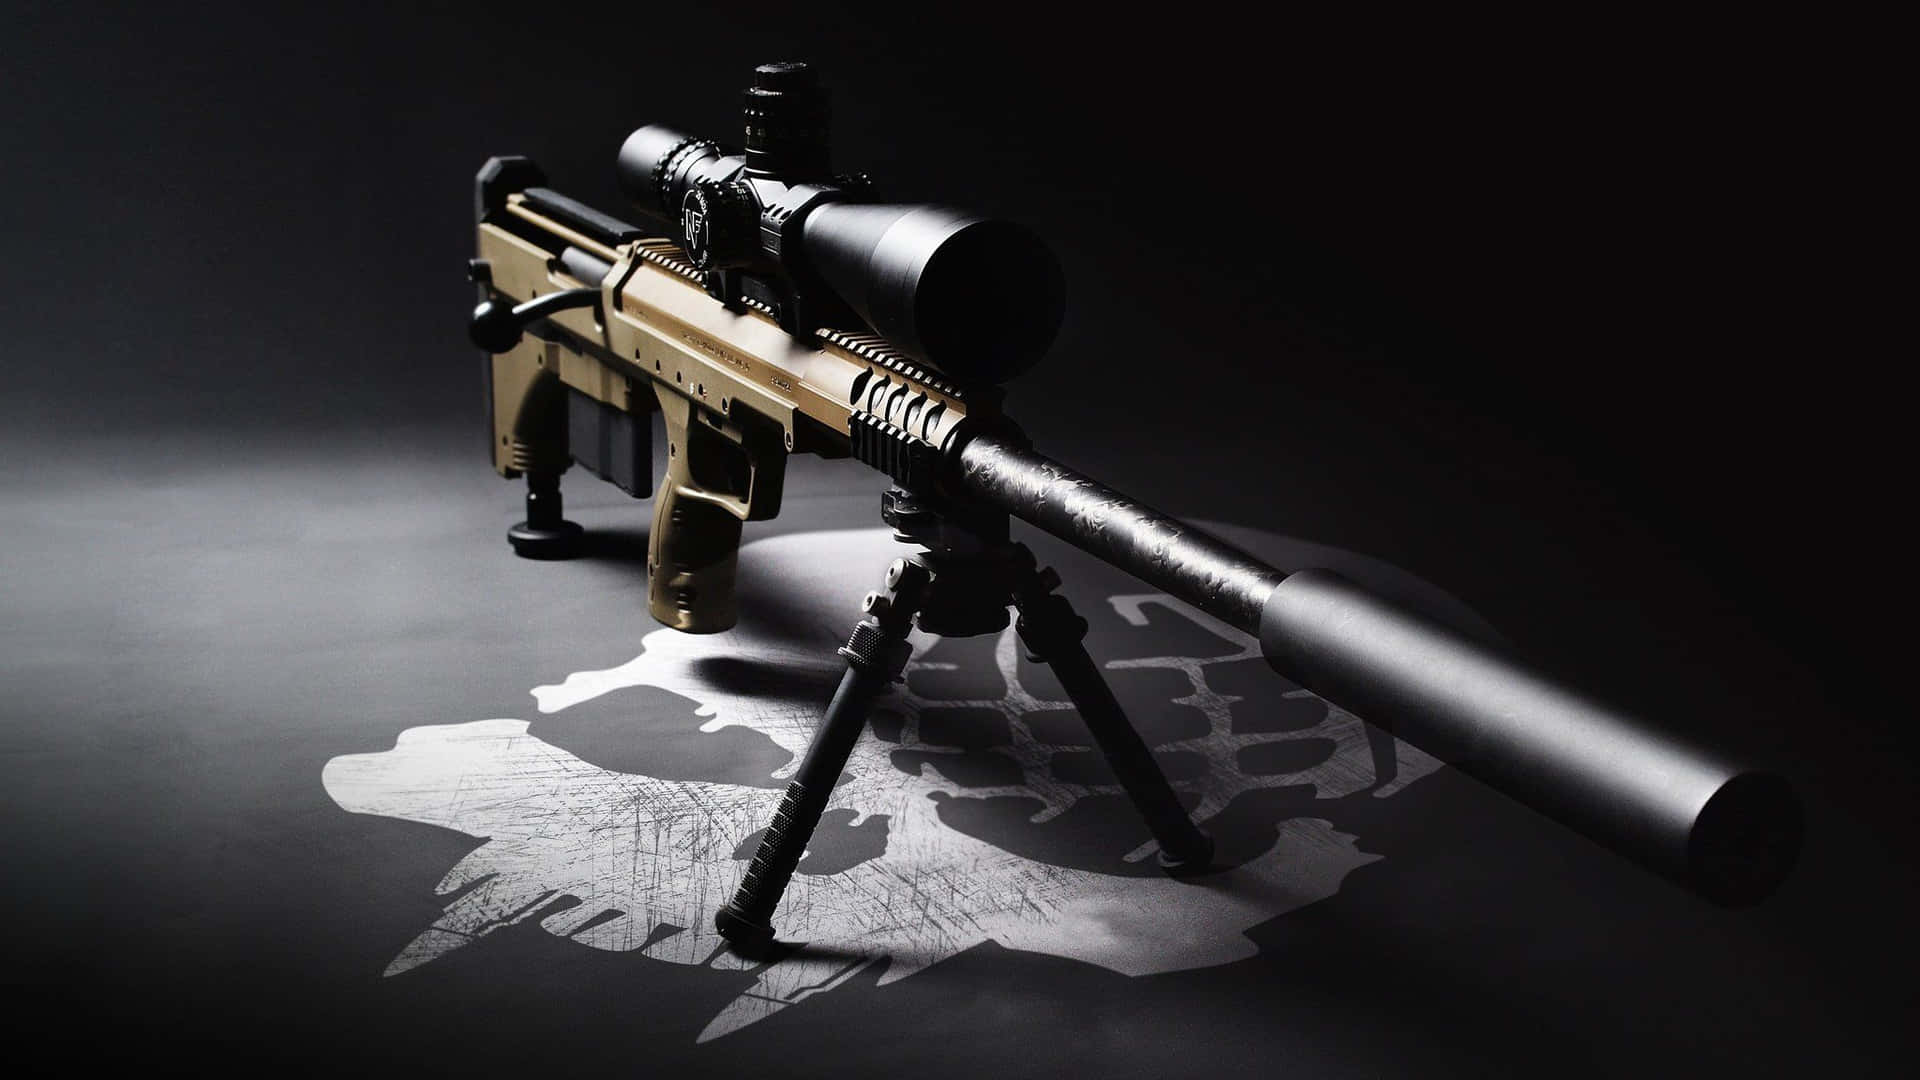 Precision Sniper Rifleon Tripod Wallpaper